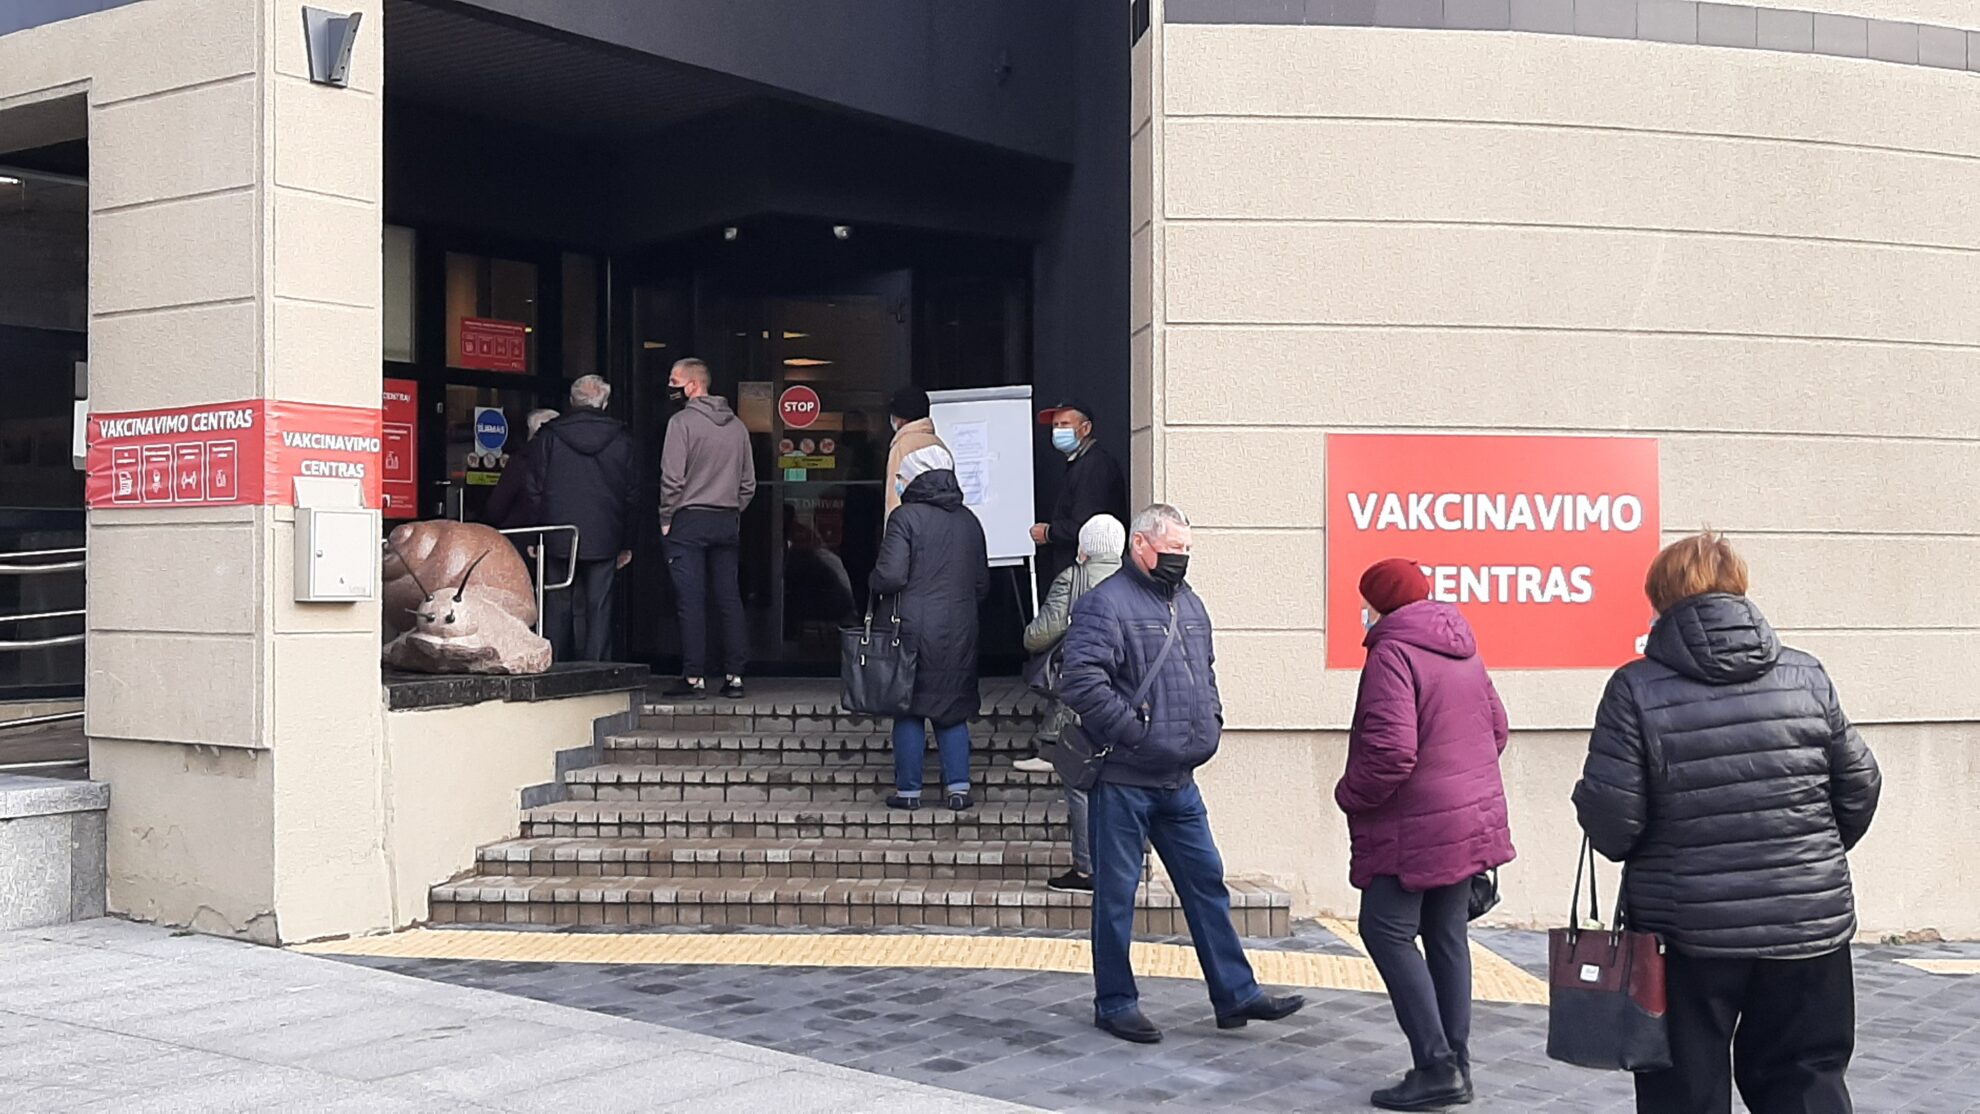 Po to, kai Seimas nutarė, kad 75 metų ir vyresniems pasiskiepijusiems senjorams bus mokama 100 eurų, nuo spalio vidurio prie Laisvės aikštėje esančio vakcinavimo centro pradėjo tįsti eilės.